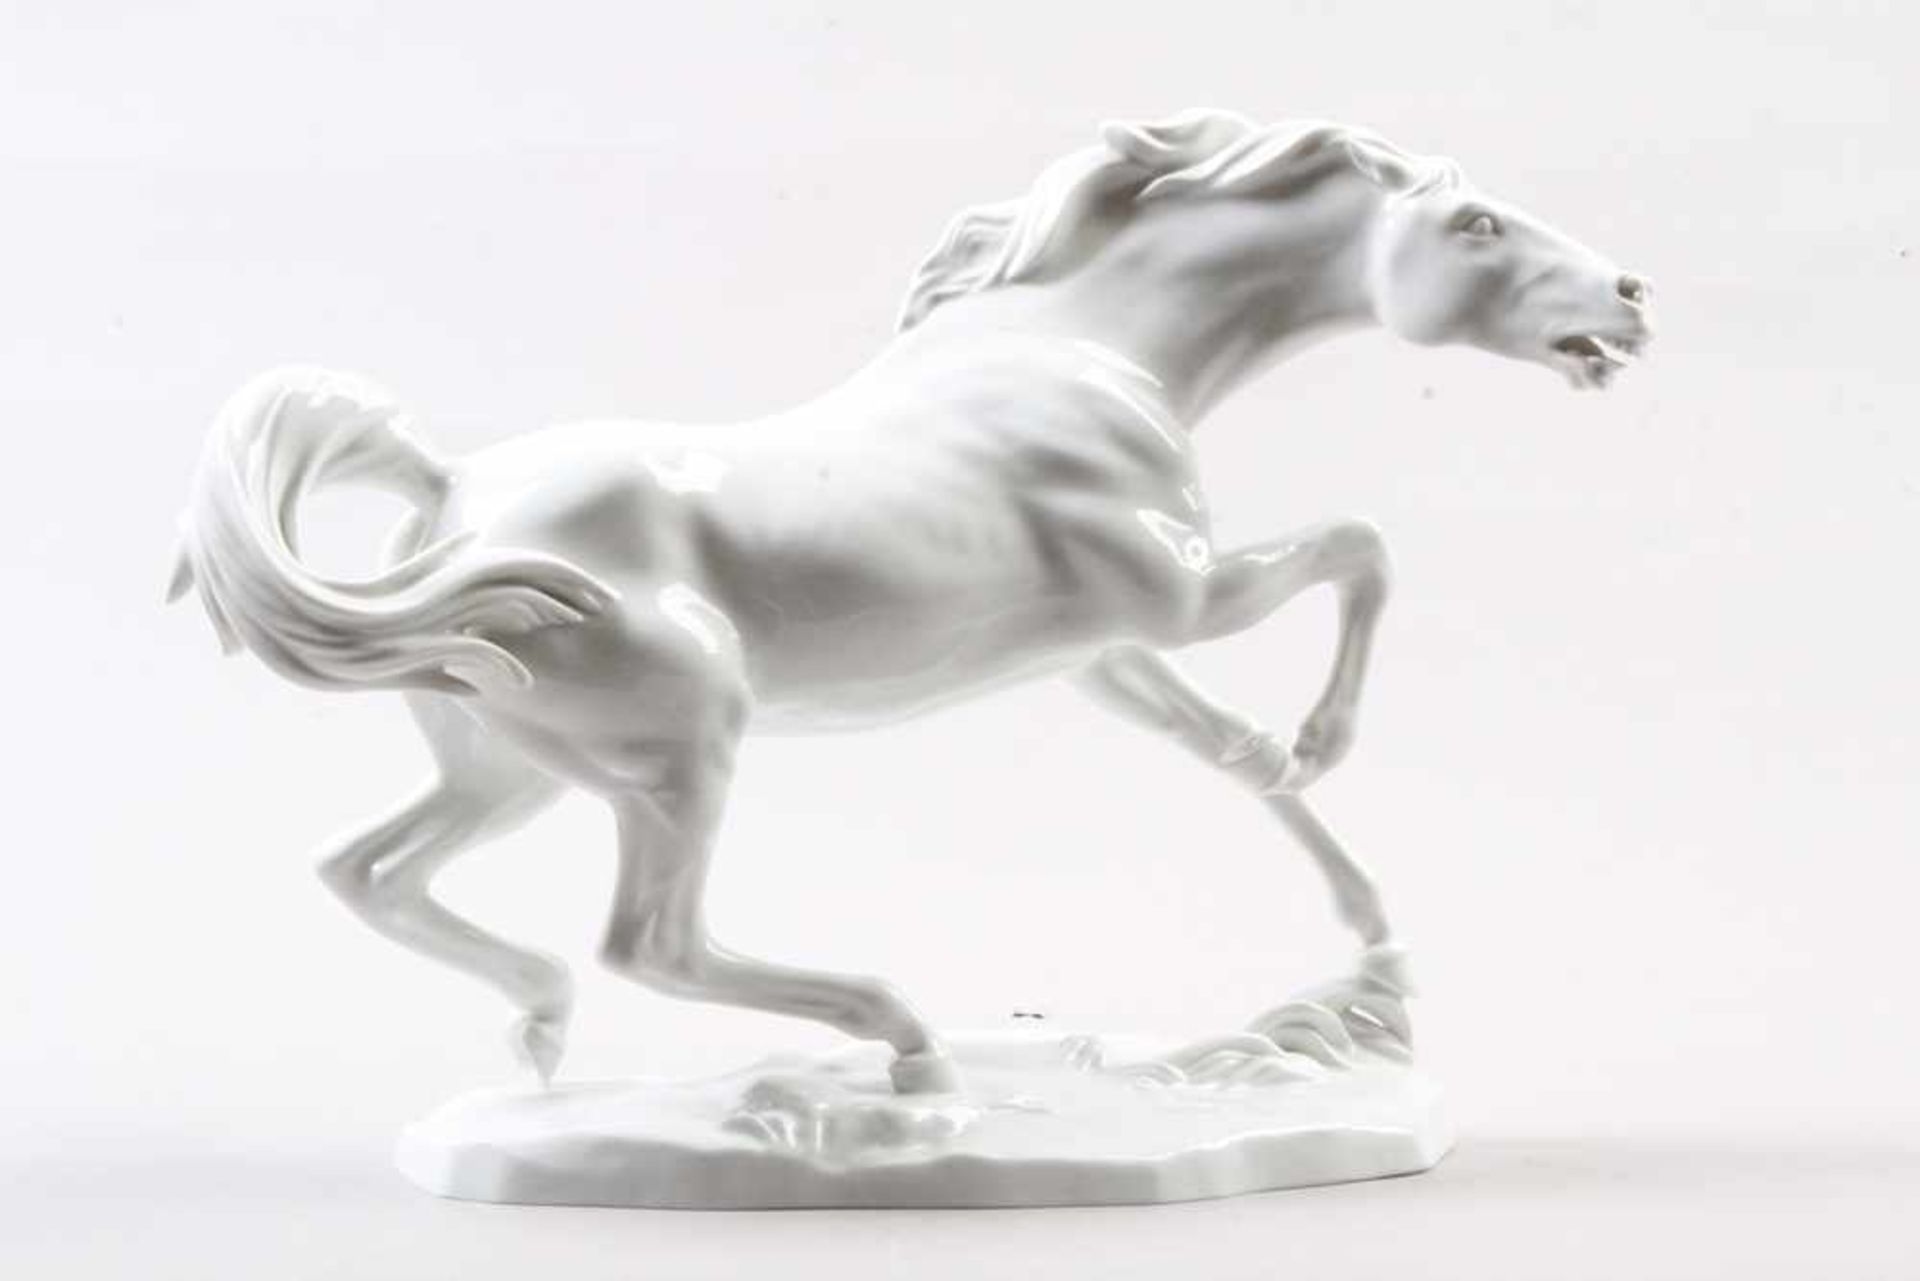 Porzellanfigur.Wien-Augarten. 20. Jh. Porzellan, weiße Glasur. Rasendes Pferd auf flachem Sockel.